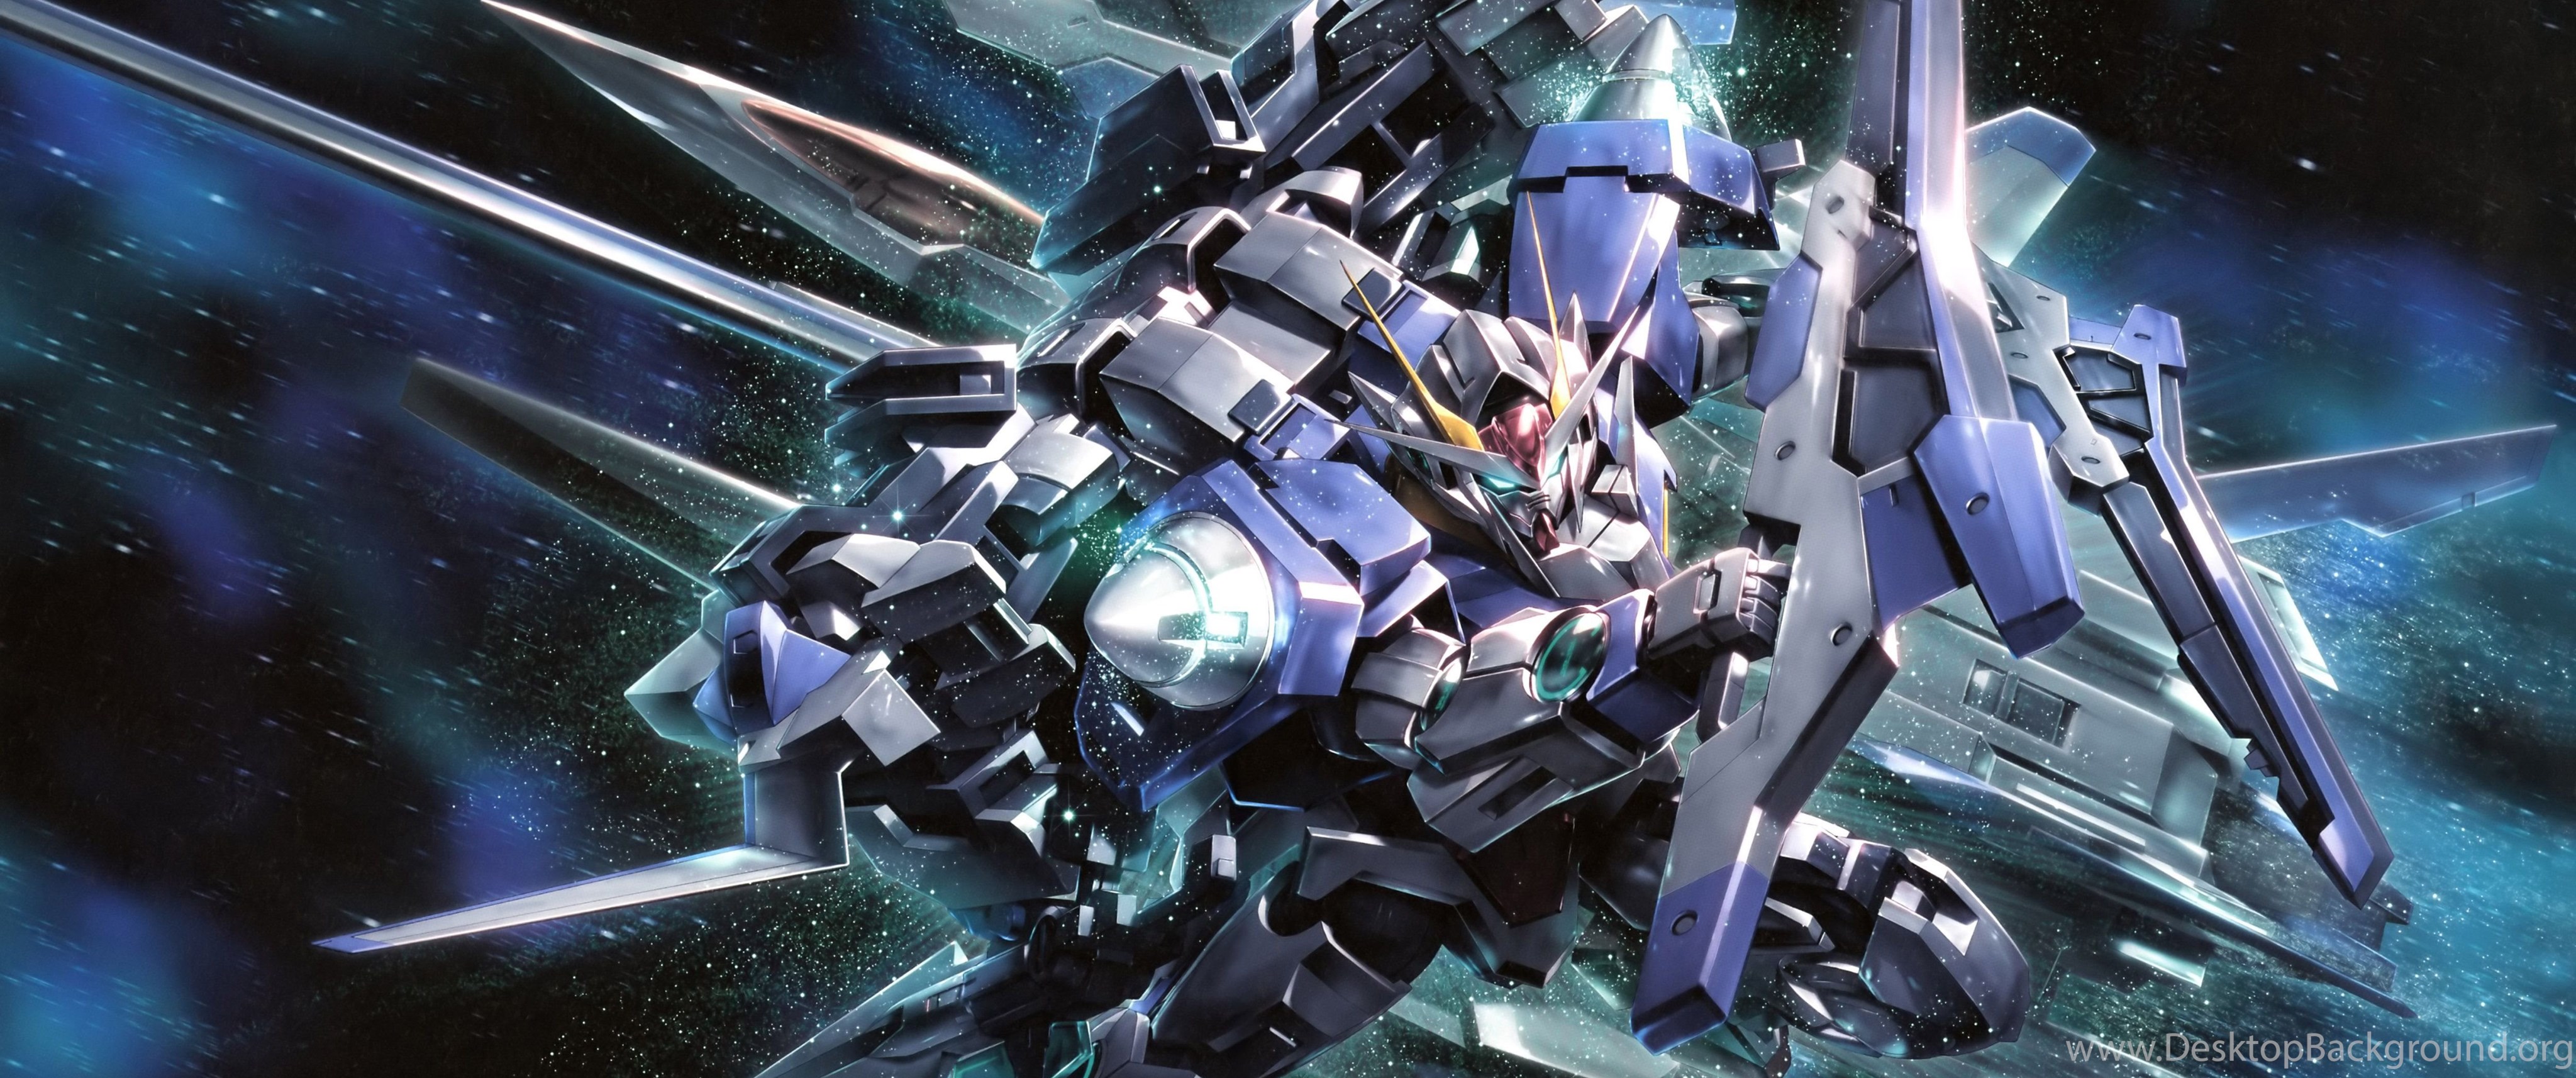 Gundam Hd Wallpaper Jpg Desktop Background